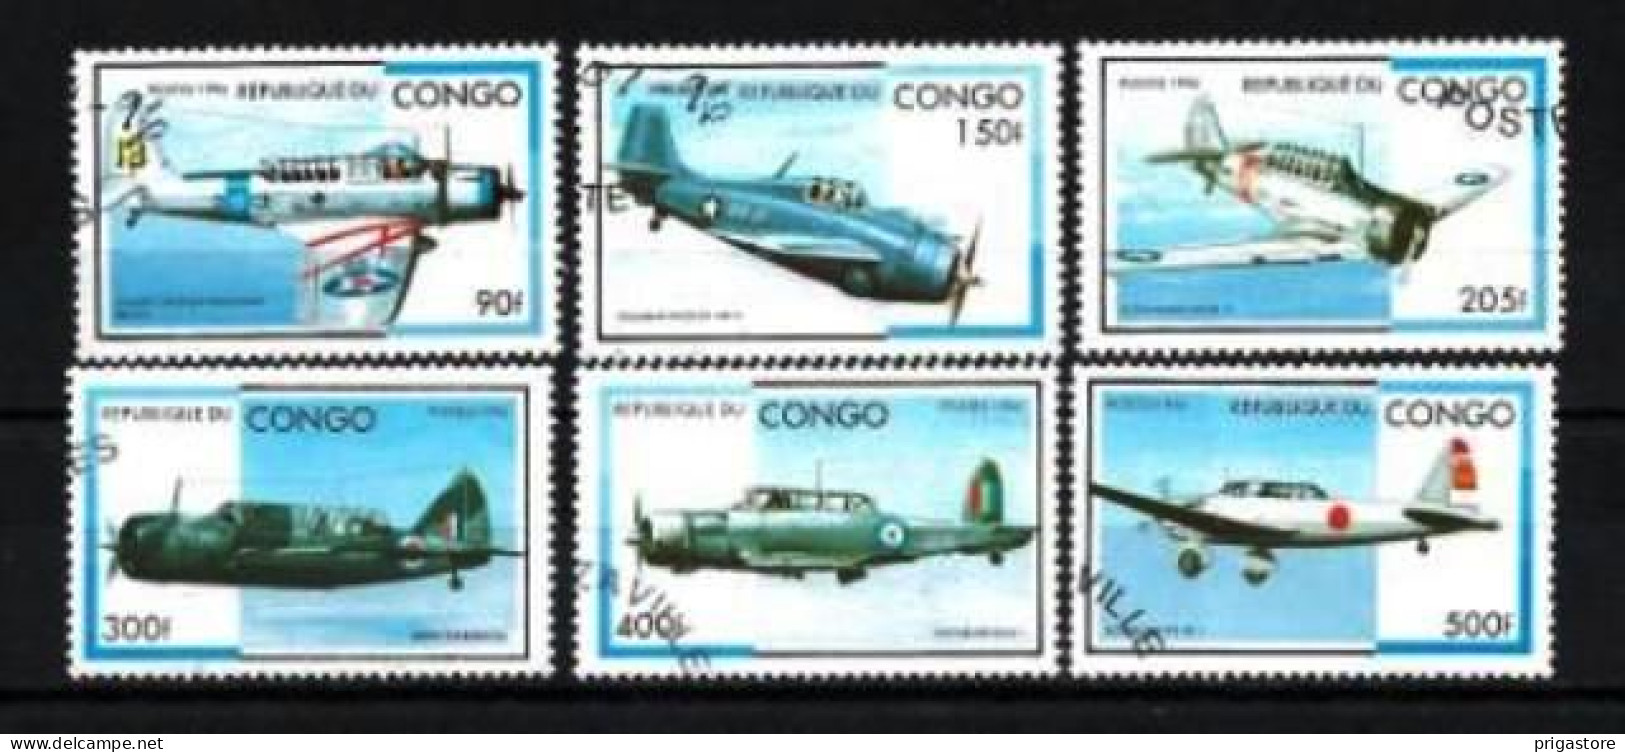 Congo 1996 Avions (39) Yvert N° 1026 N à 1026 T Oblitéré Used - Usados